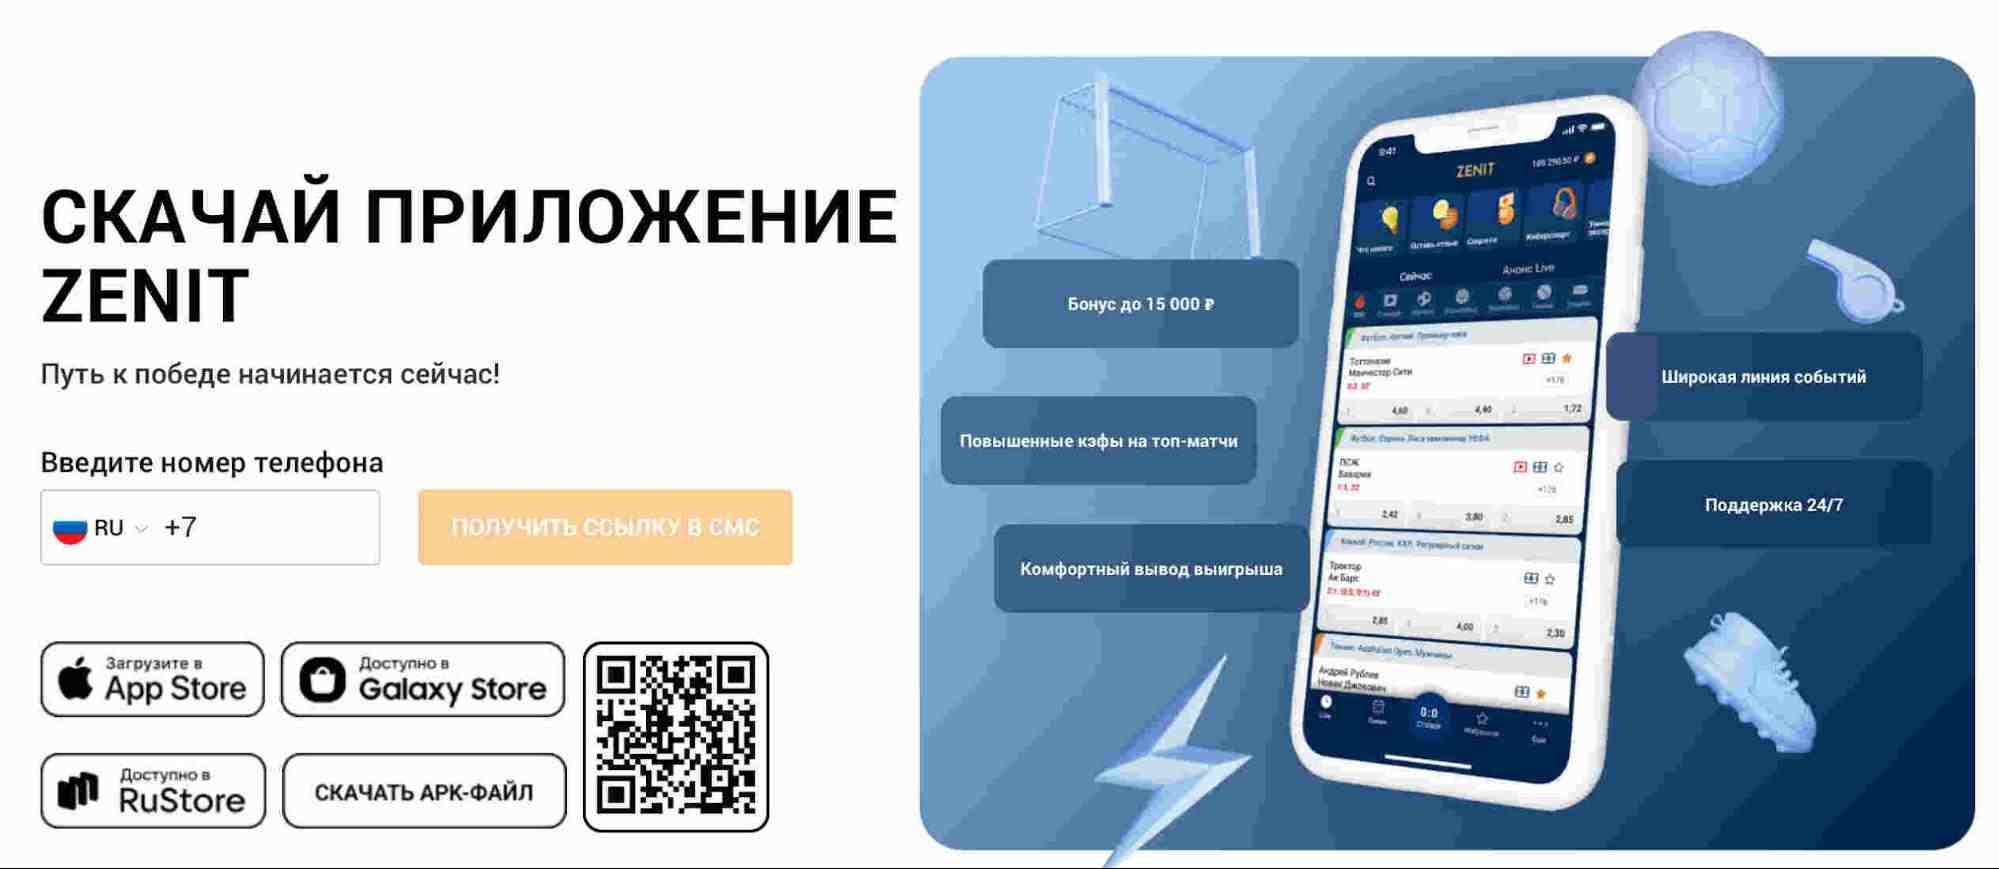 Скачать приложение Zenit на айфон